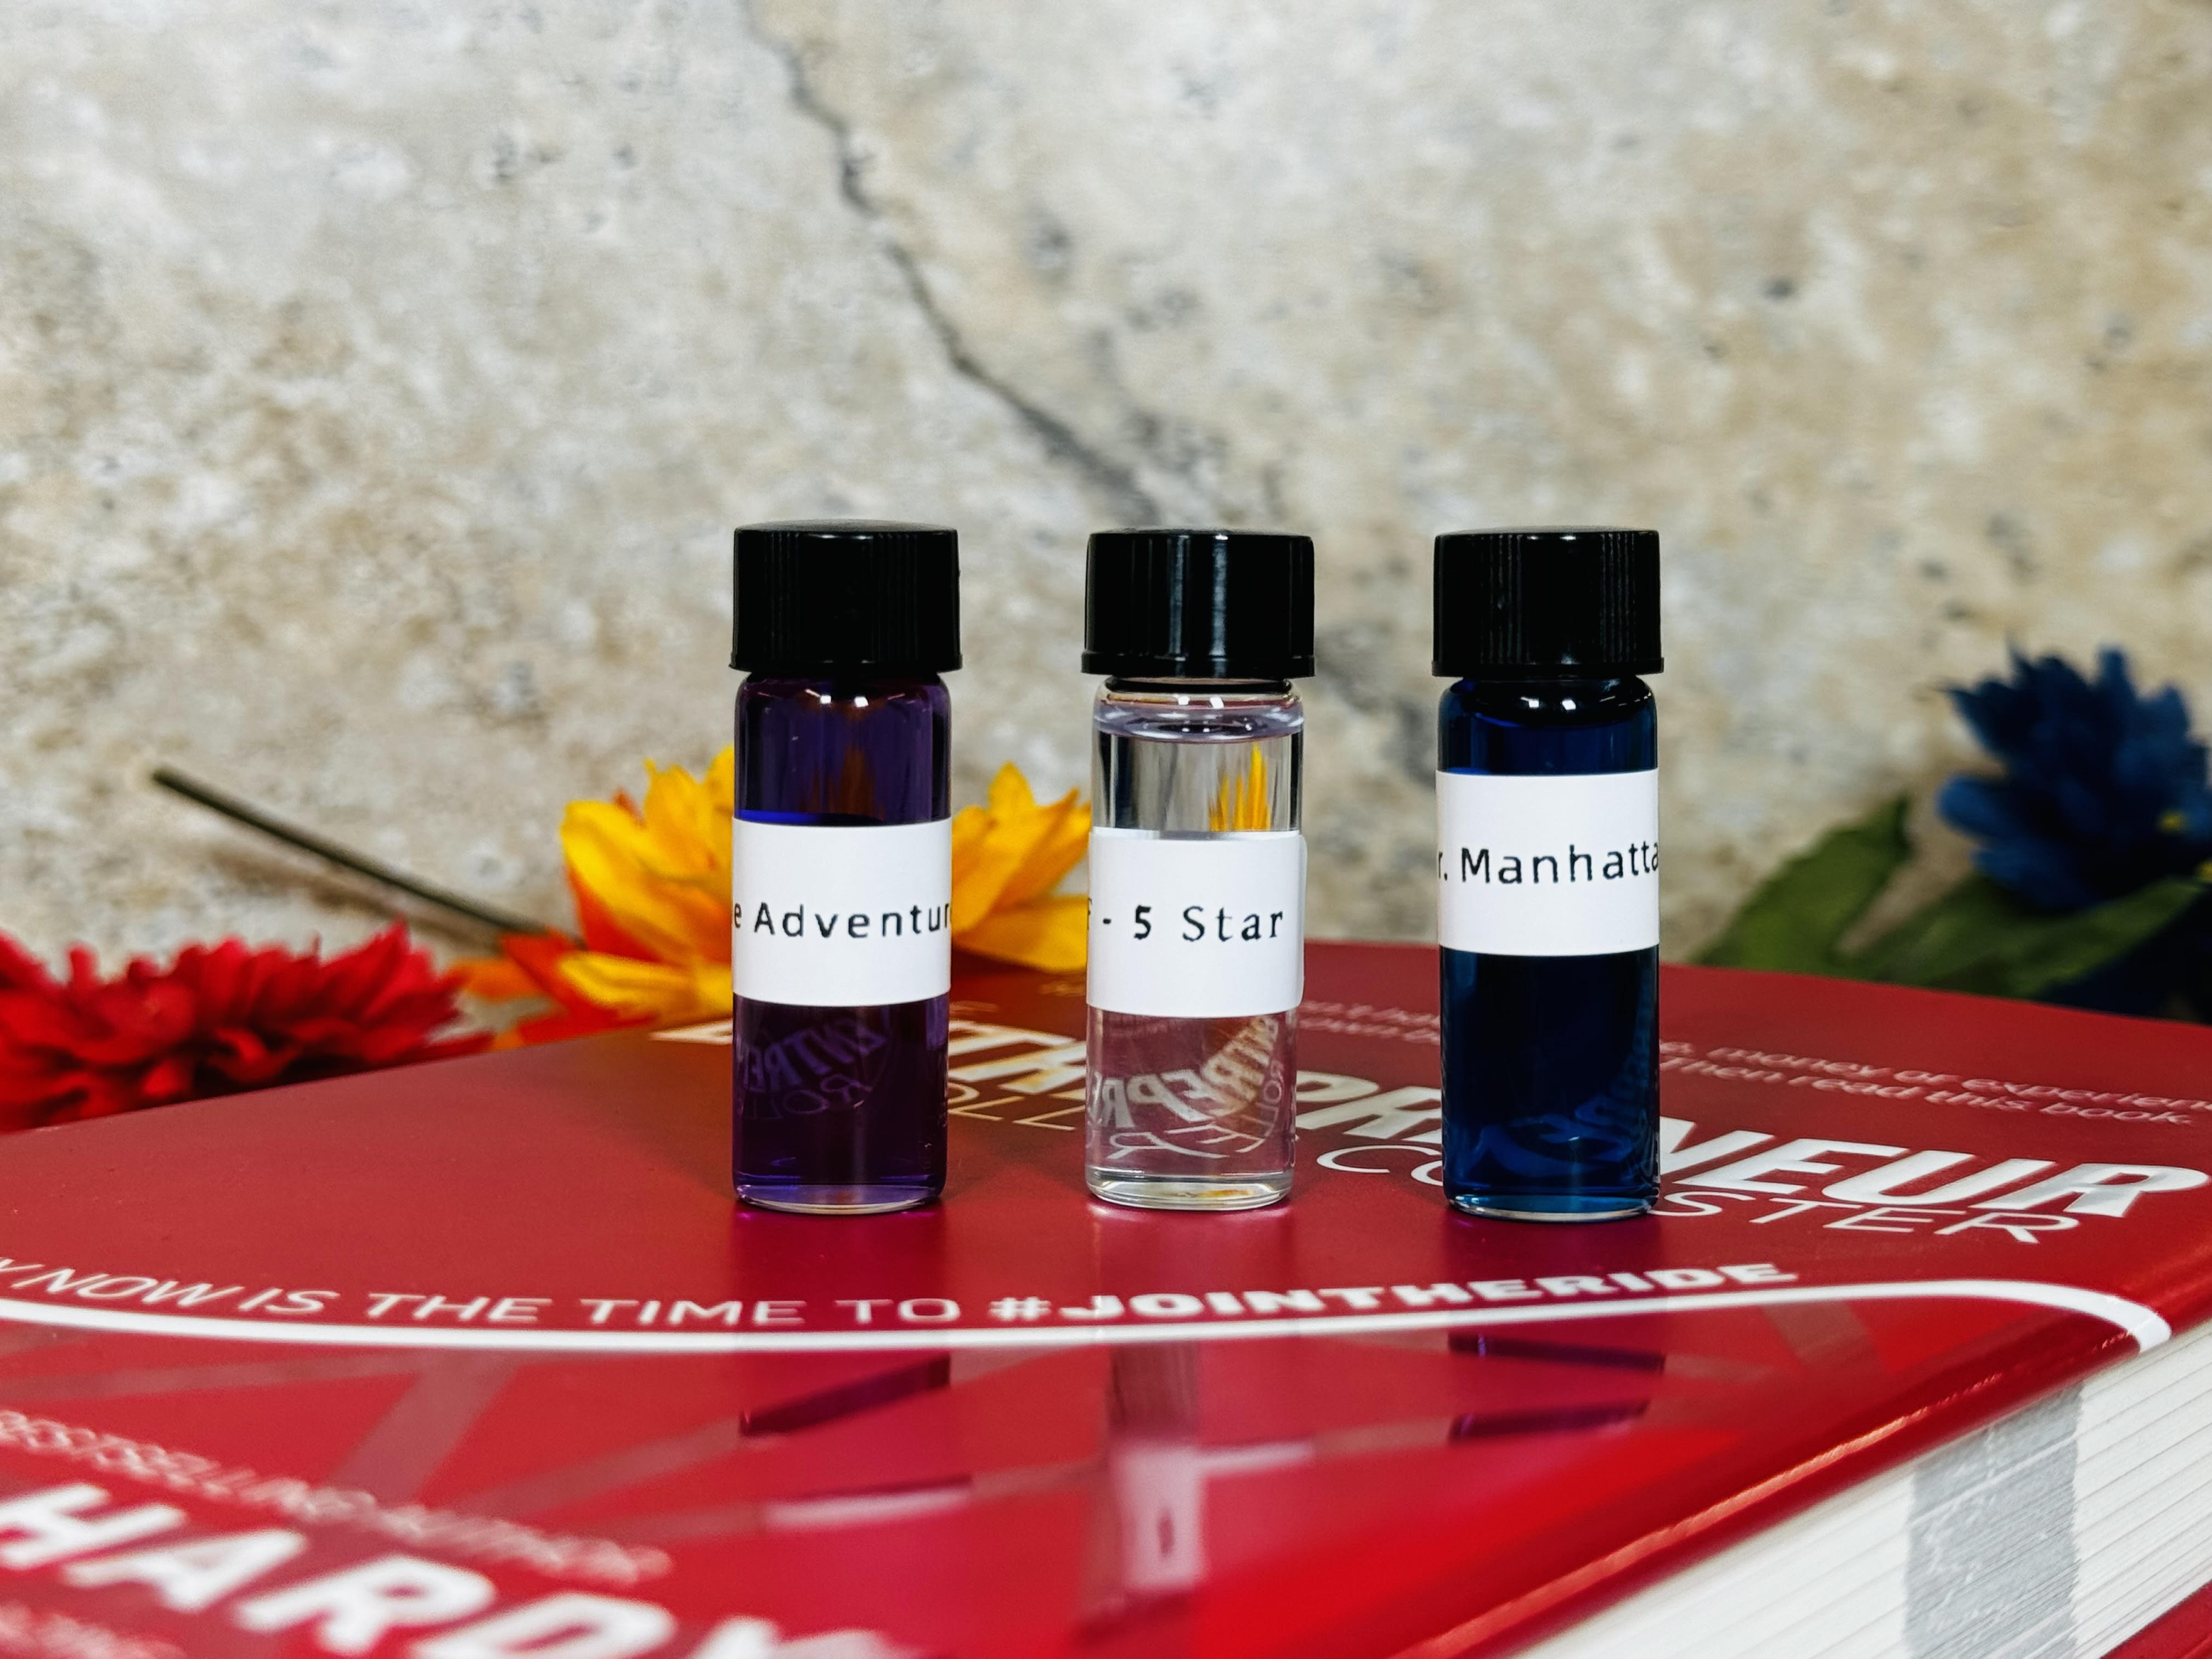 Parallel Pack - 3 Fragrance Samples